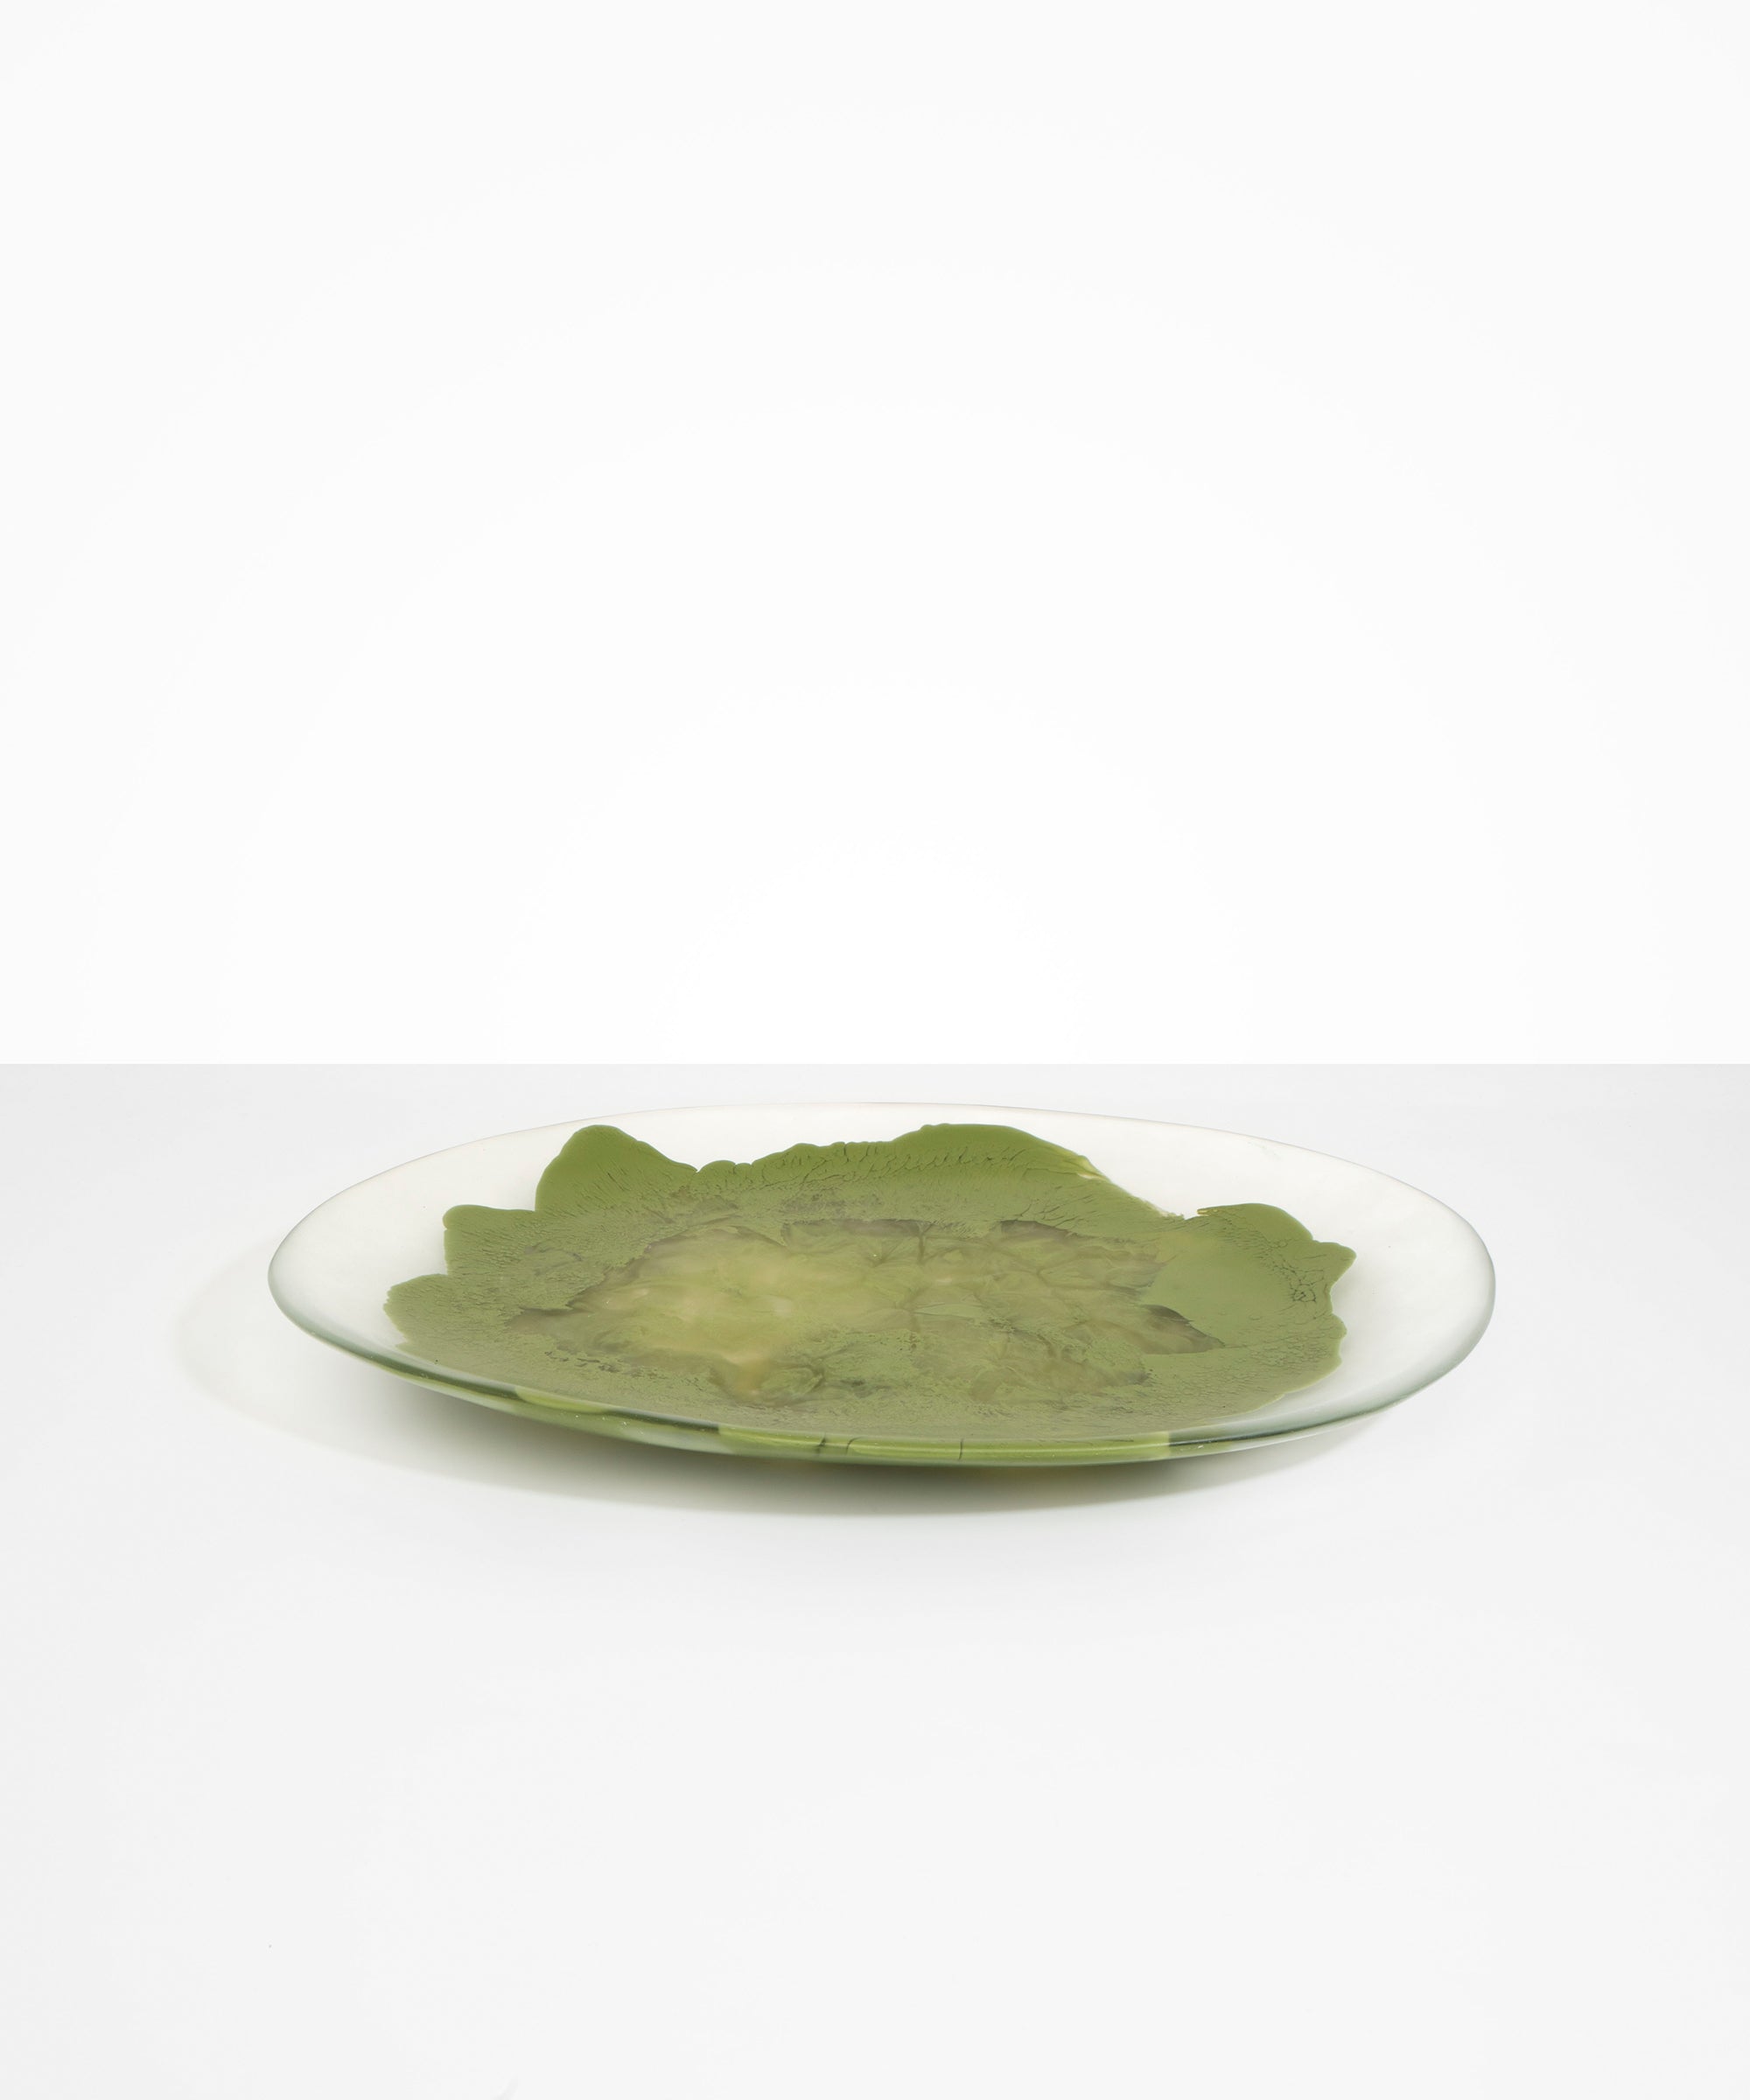 Dinosaur Designs Long Temple Platter Serving Platters in Olive color resin